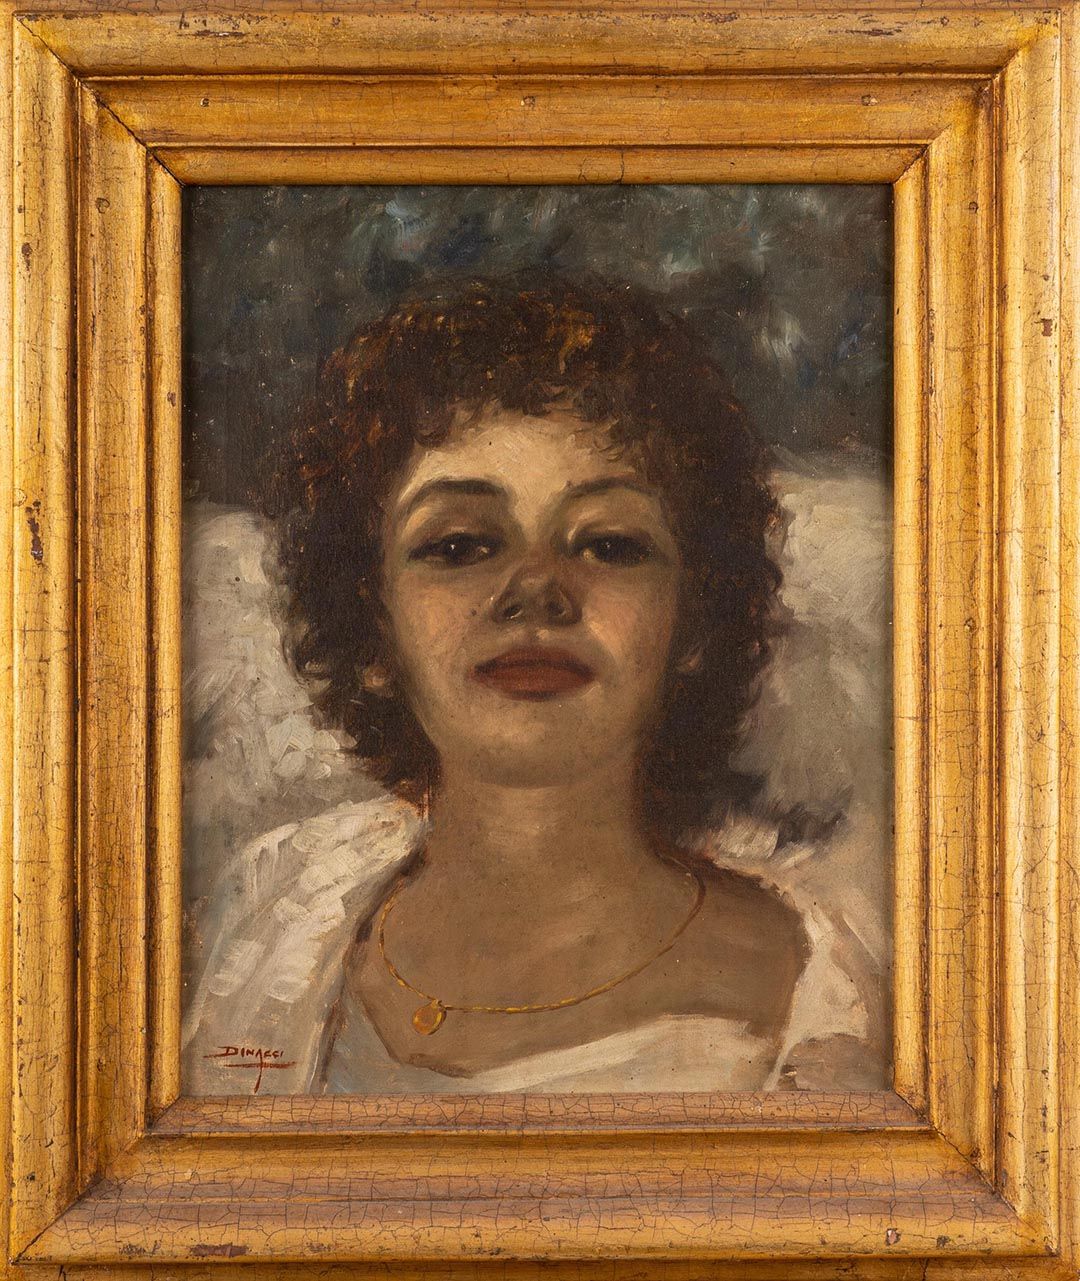 GENNARO DINACCI 女性画像

20世纪

布面油画

cm 50x39

左下方有签名